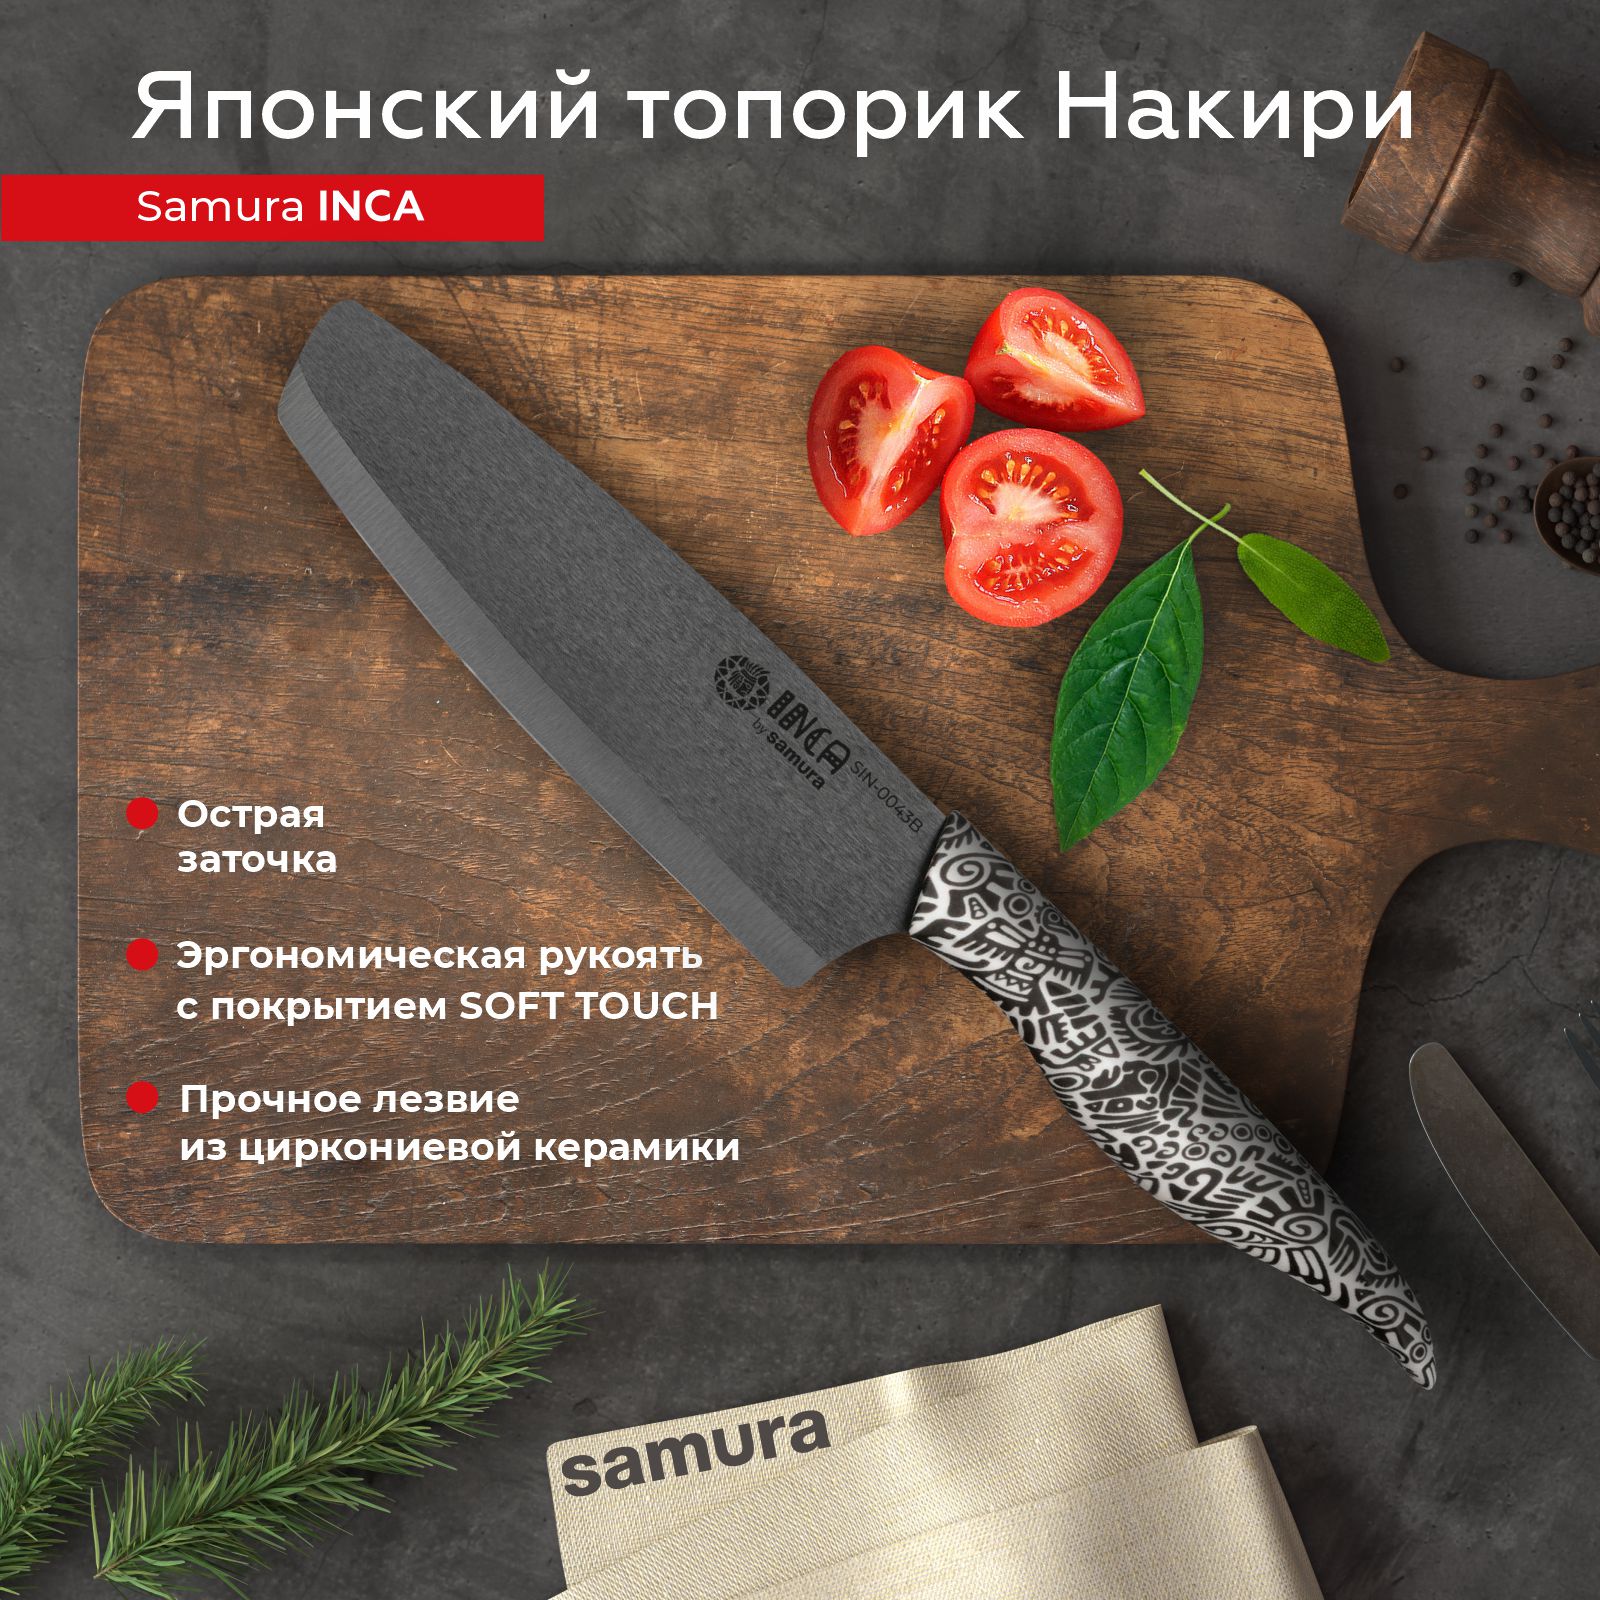 Нож кухонный поварской Samura Inca топорик Накири для шинковки .